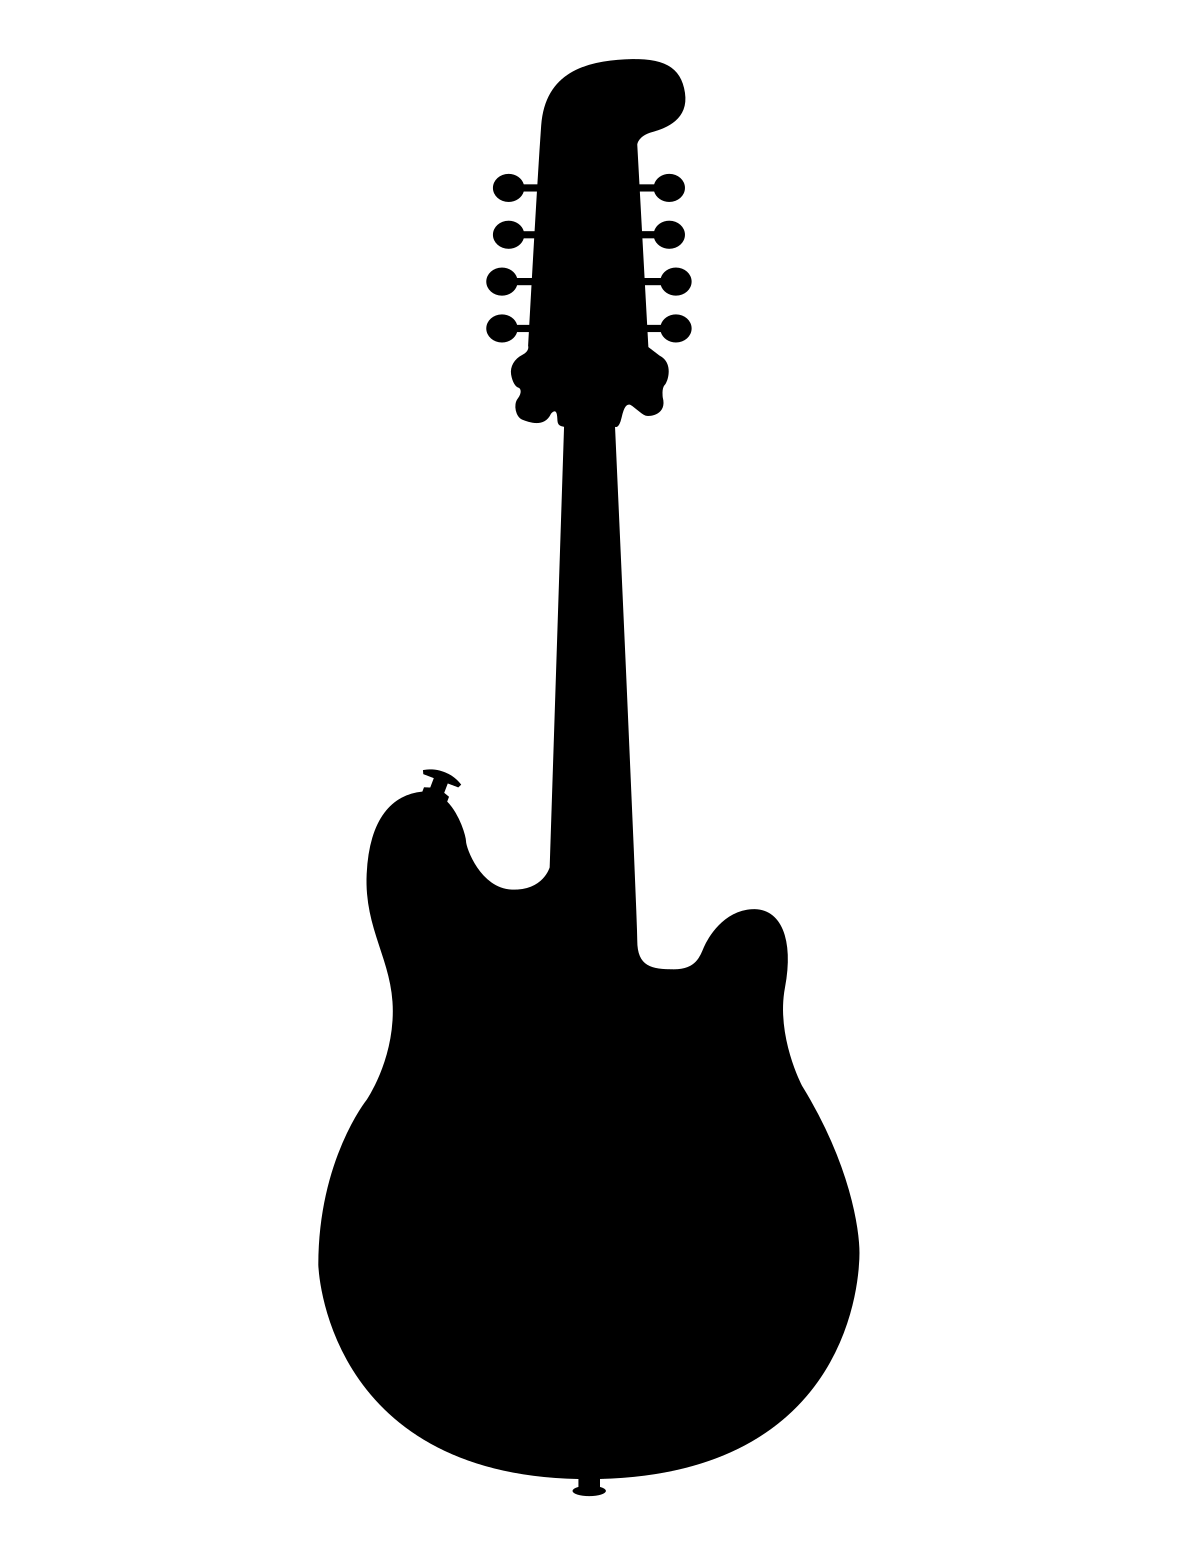 Mandolin Instrument PNG Image Background